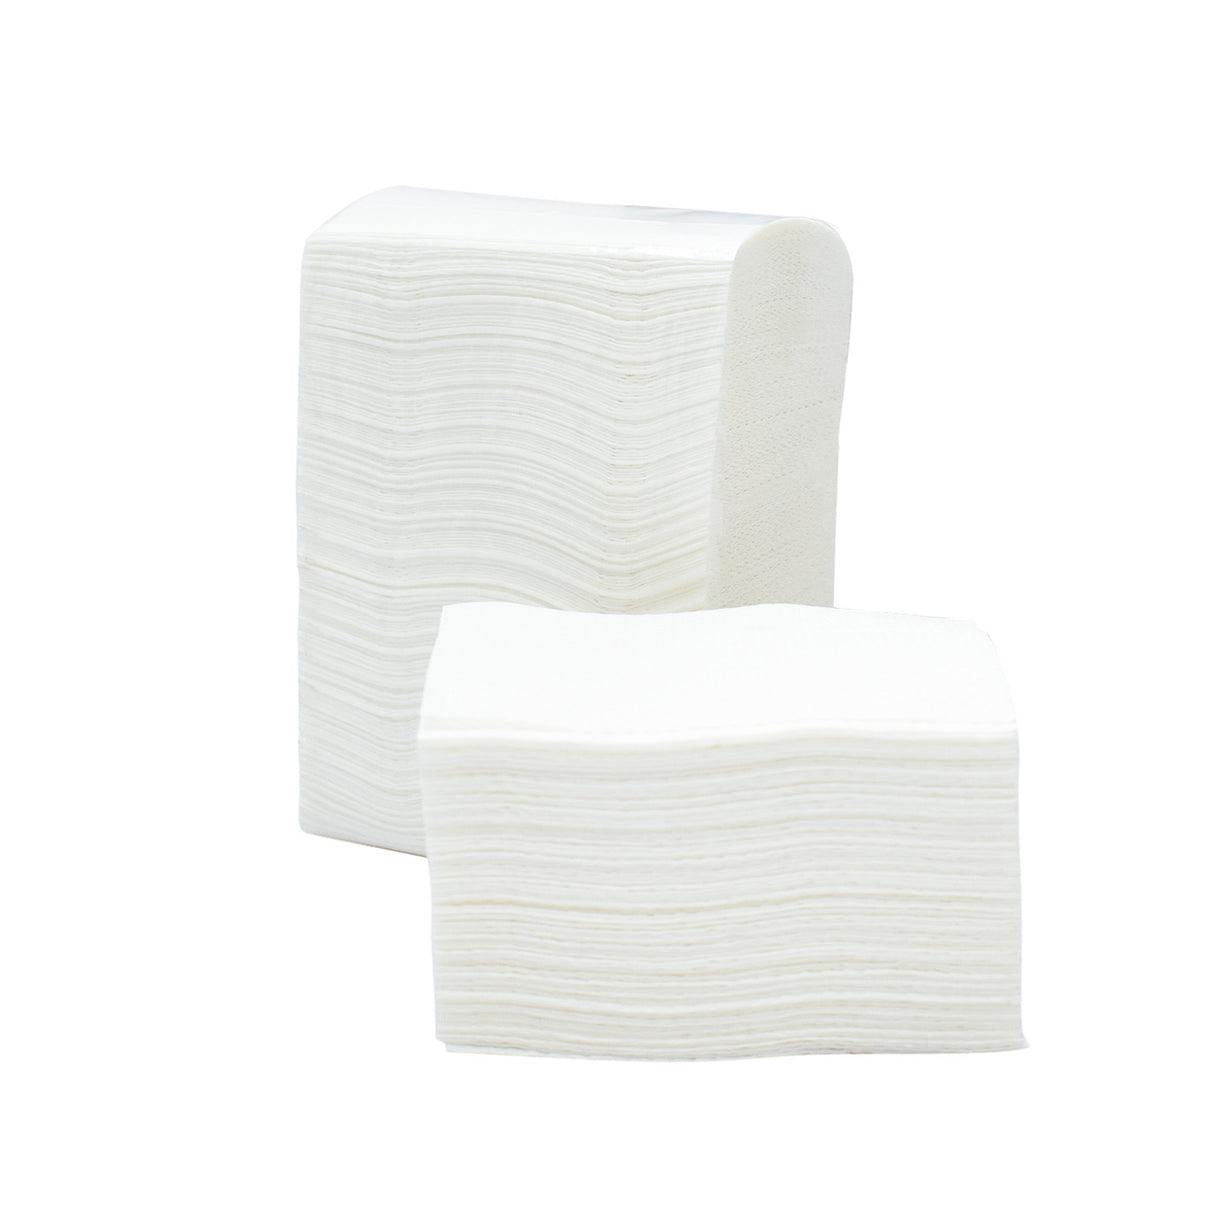 NuPaper® M-Fold Paper Hand Towel Small ERE2082-2 (8000 sheets, 32 pkts per carton)